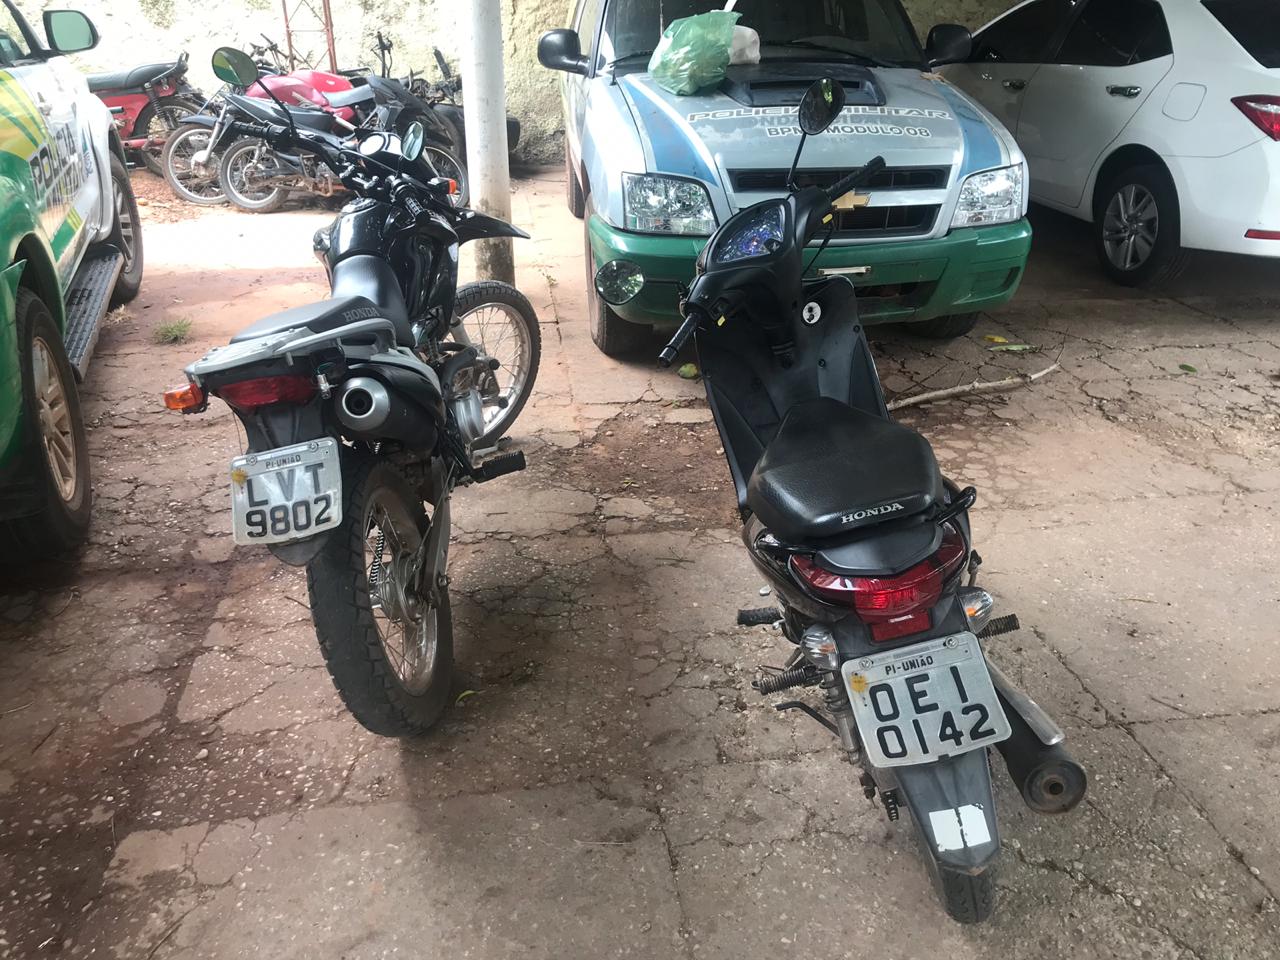 Motocicletas recuperadas pela PM